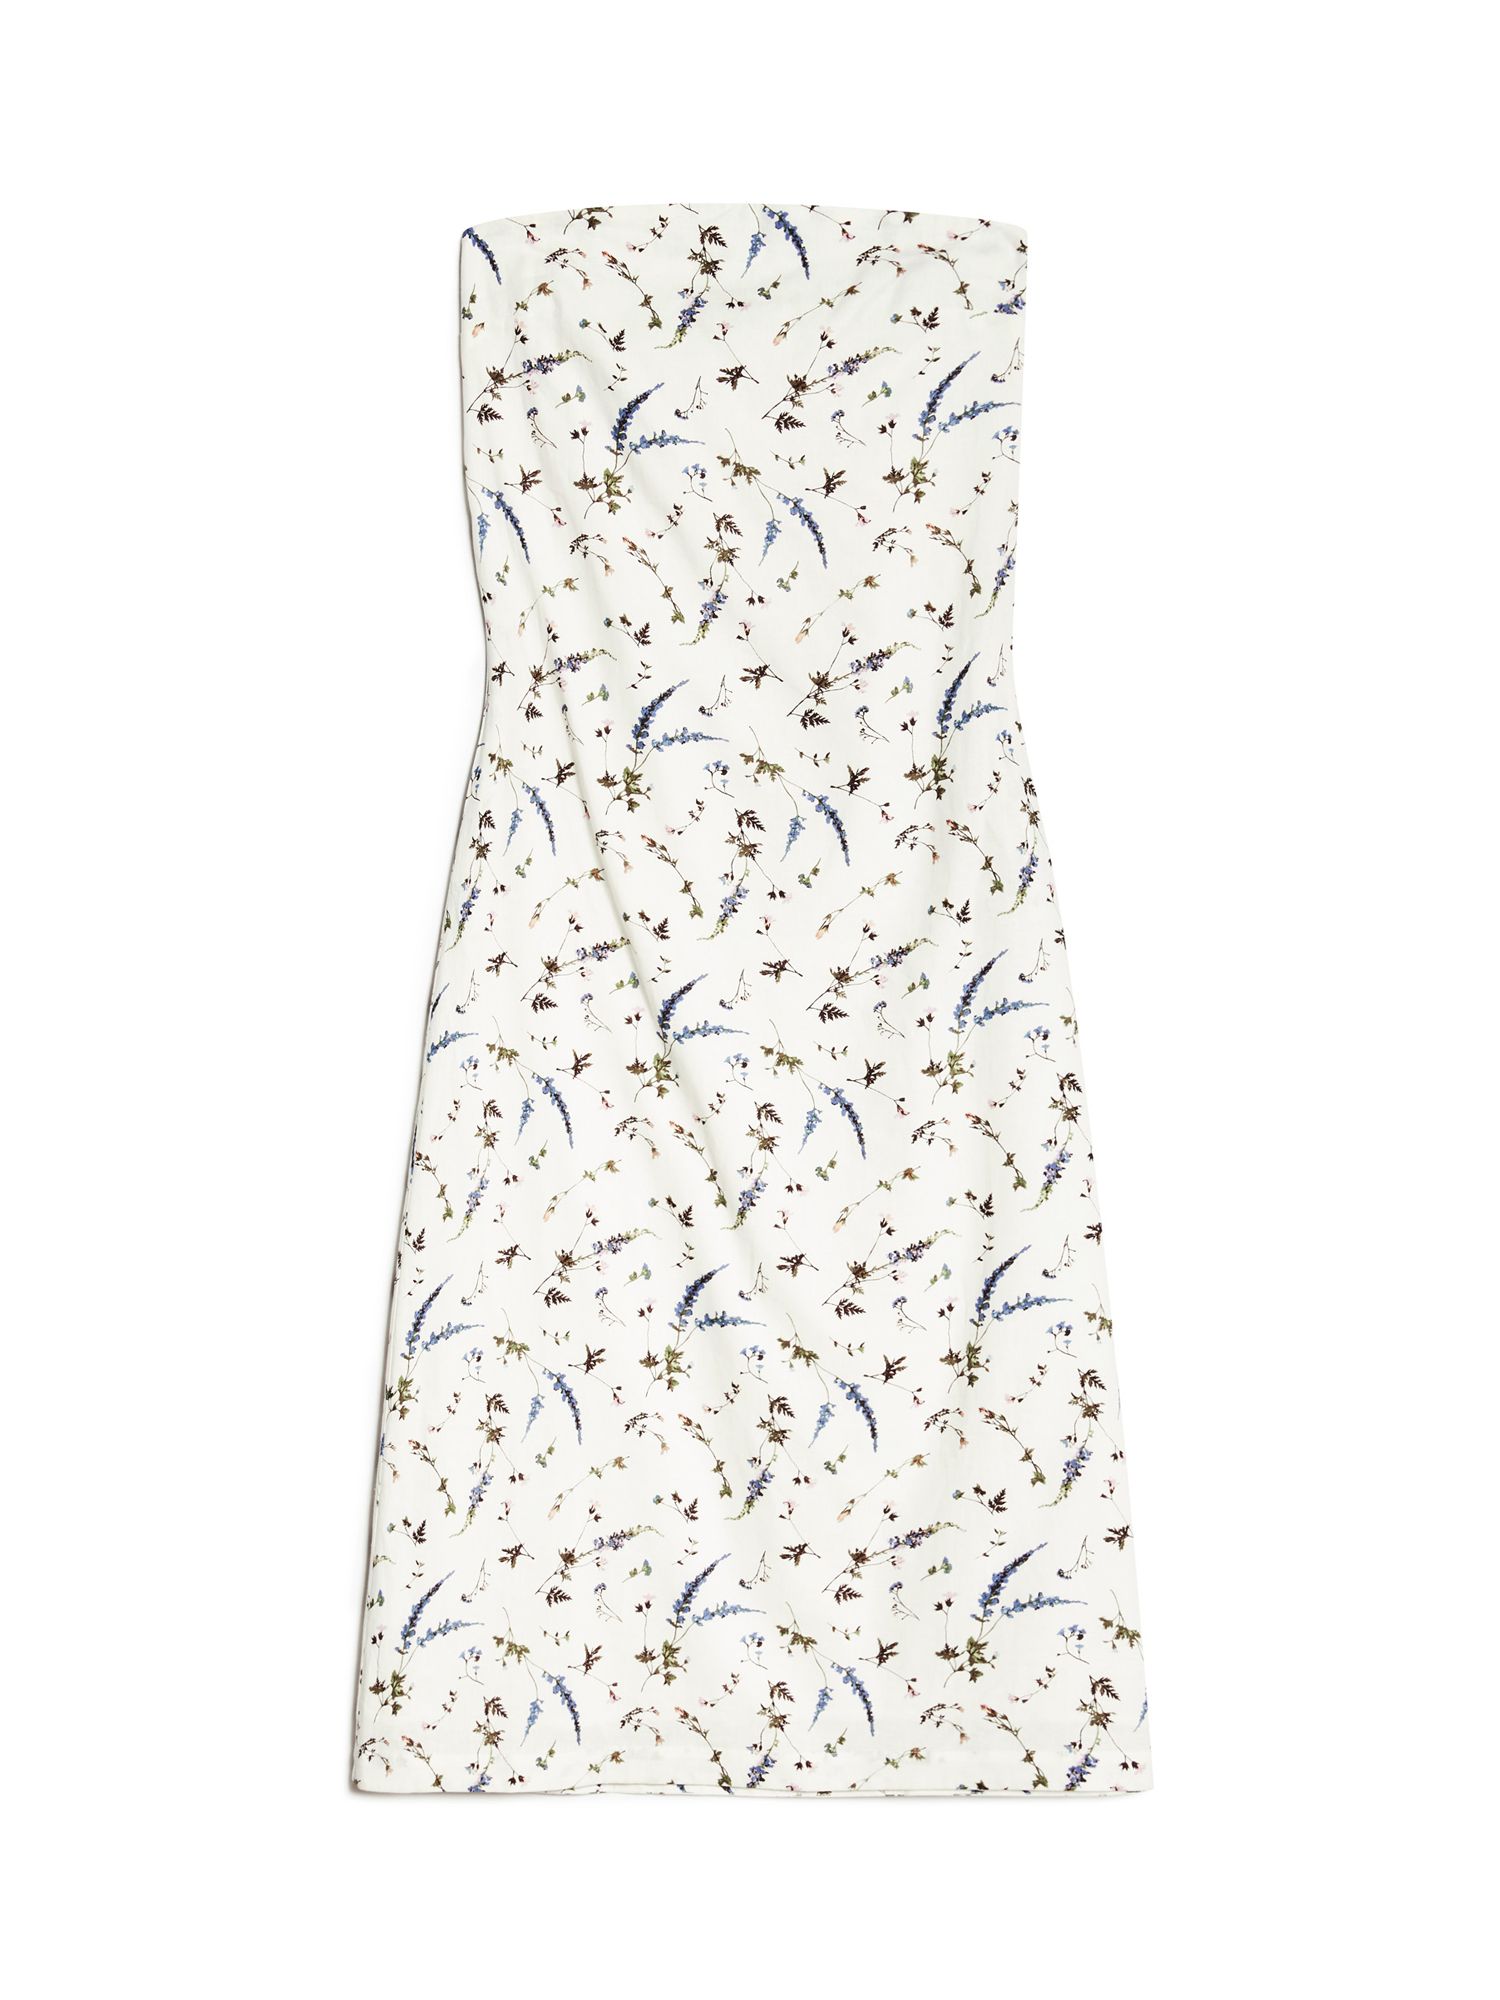 Buy Albaray Sprig Floral Bandeau Maxi Dress Online at johnlewis.com